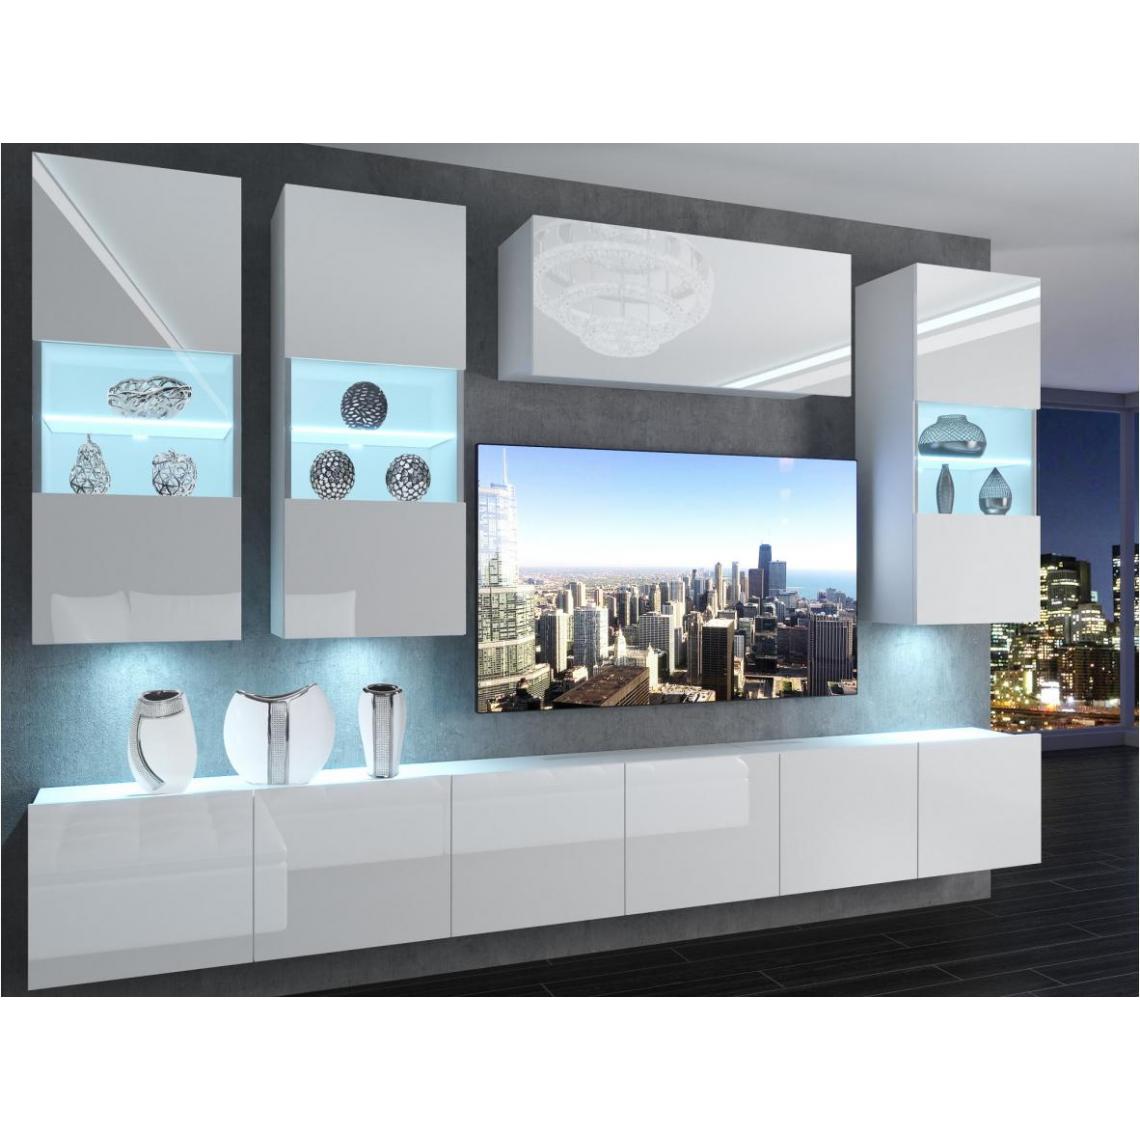 Hucoco - RAMONE - Ensemble meubles TV - Unité murale largeur 300 cm - Mur TV à suspendre finition gloss - Sans LED - Blanc - Meubles TV, Hi-Fi